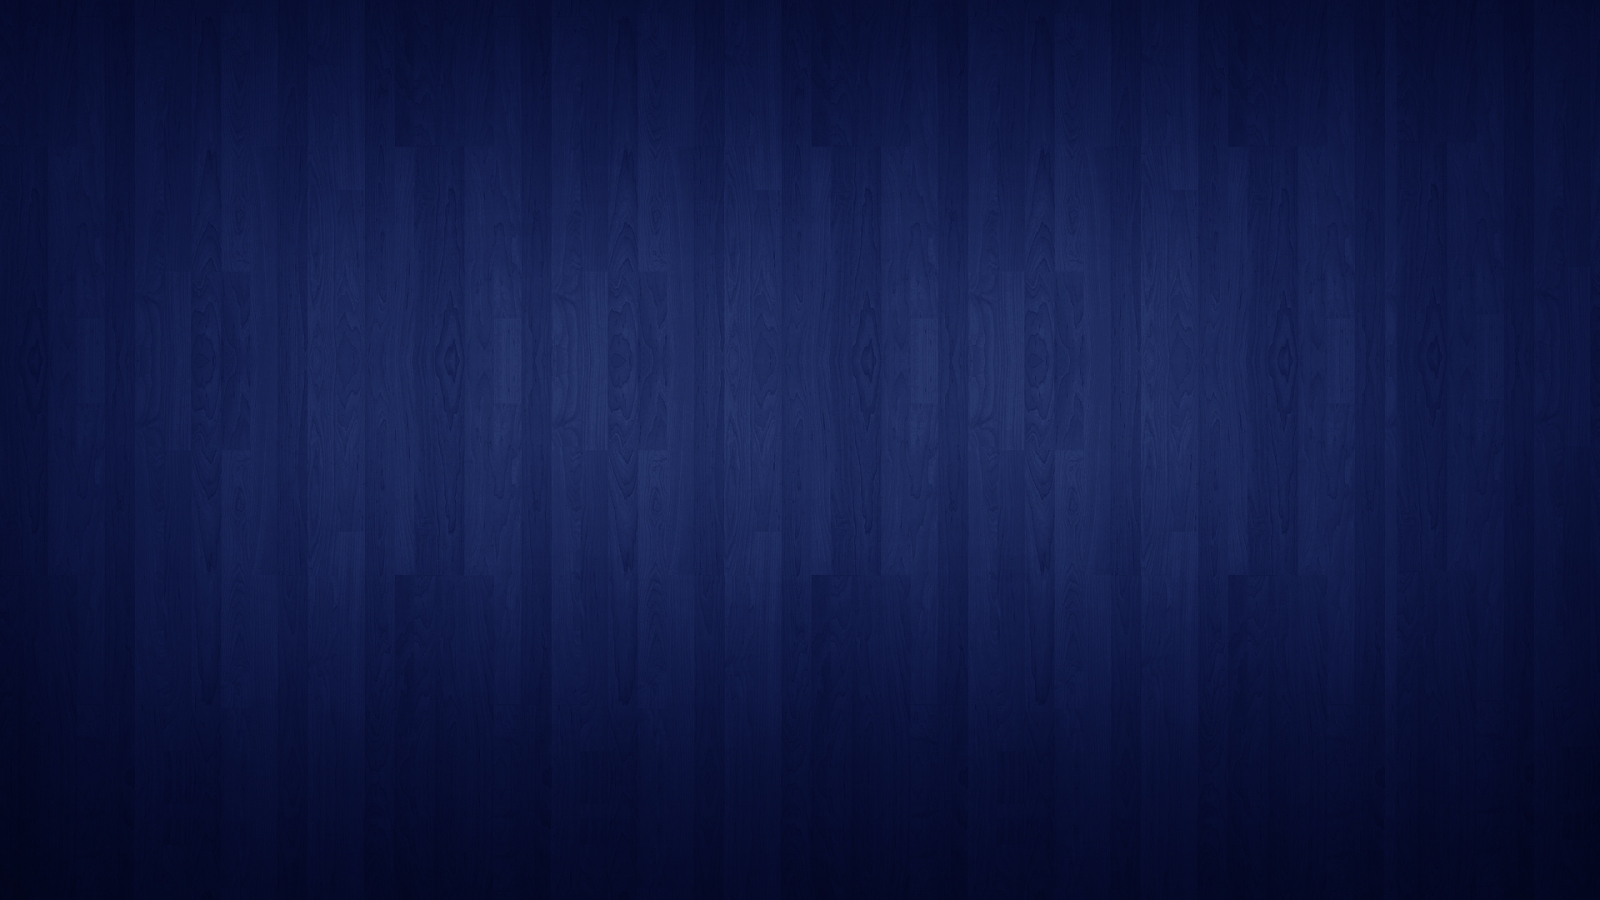 dark-blue-background-hd-wallpaper-12829